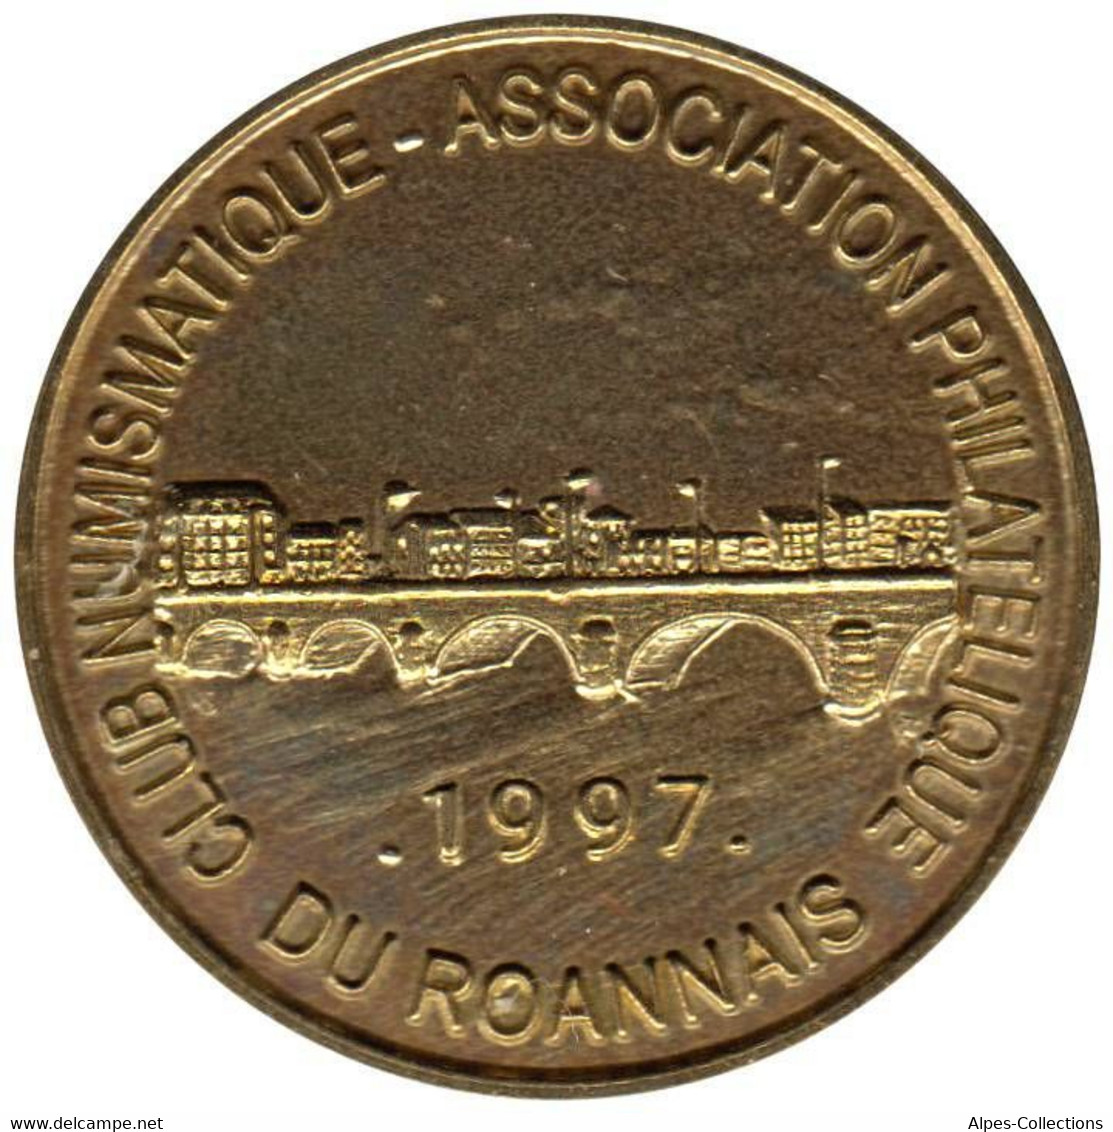 ROANNE - EU0050.1 - 5 EURO DES VILLES - Réf: NR - 1997 - Euros Of The Cities